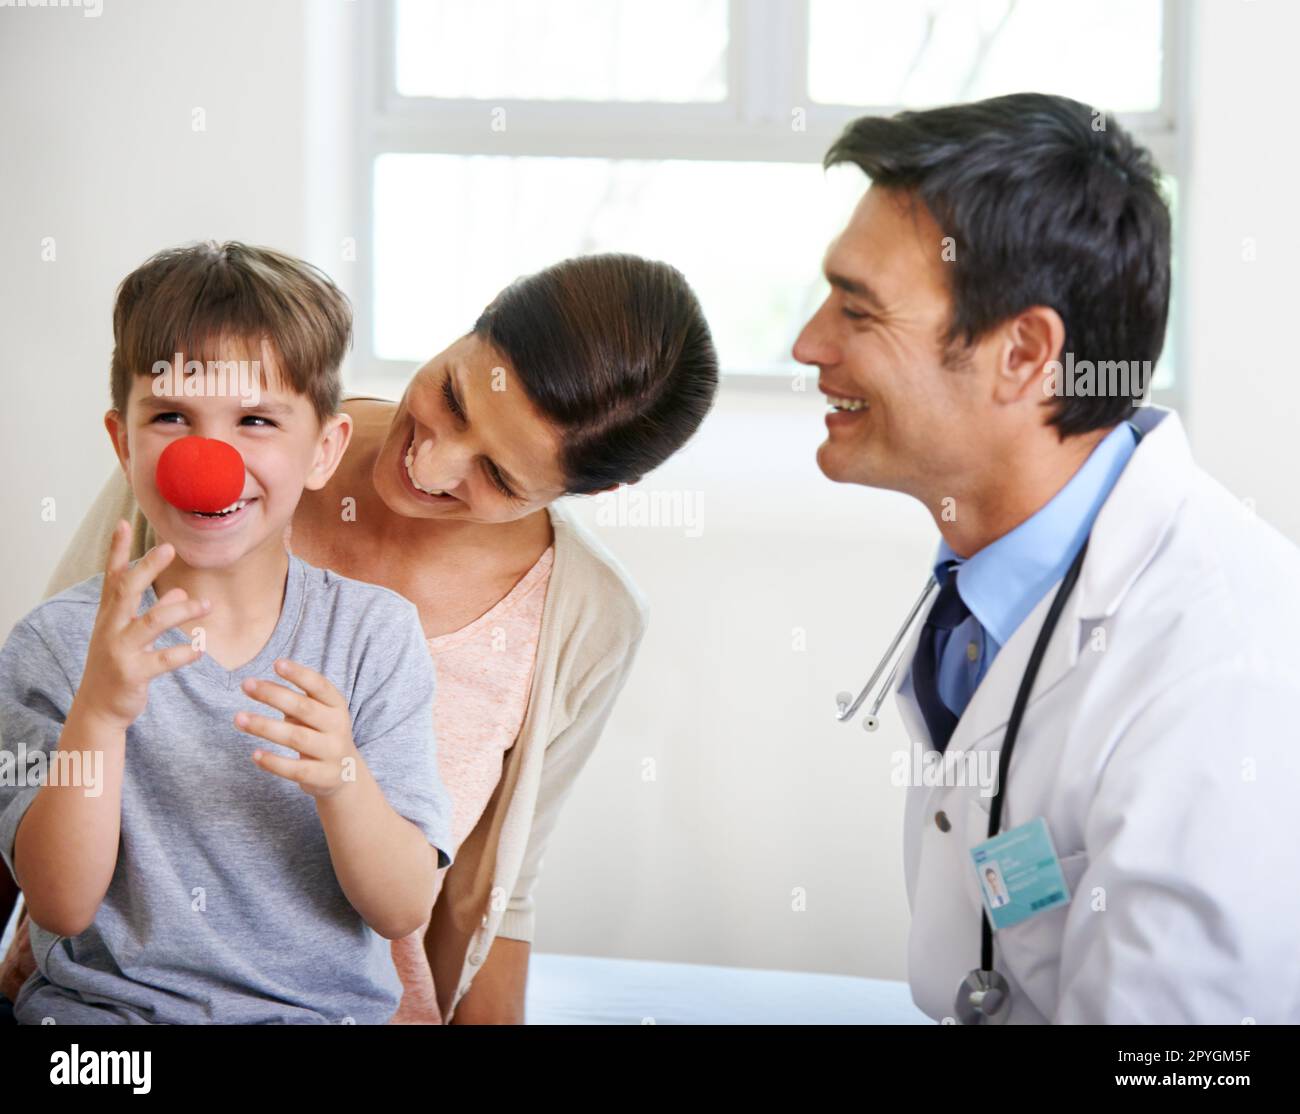 Il primo segno di influenza è un naso rosso. un ragazzo carino che gioca con un naso di clown nella stanza dei medici. Foto Stock